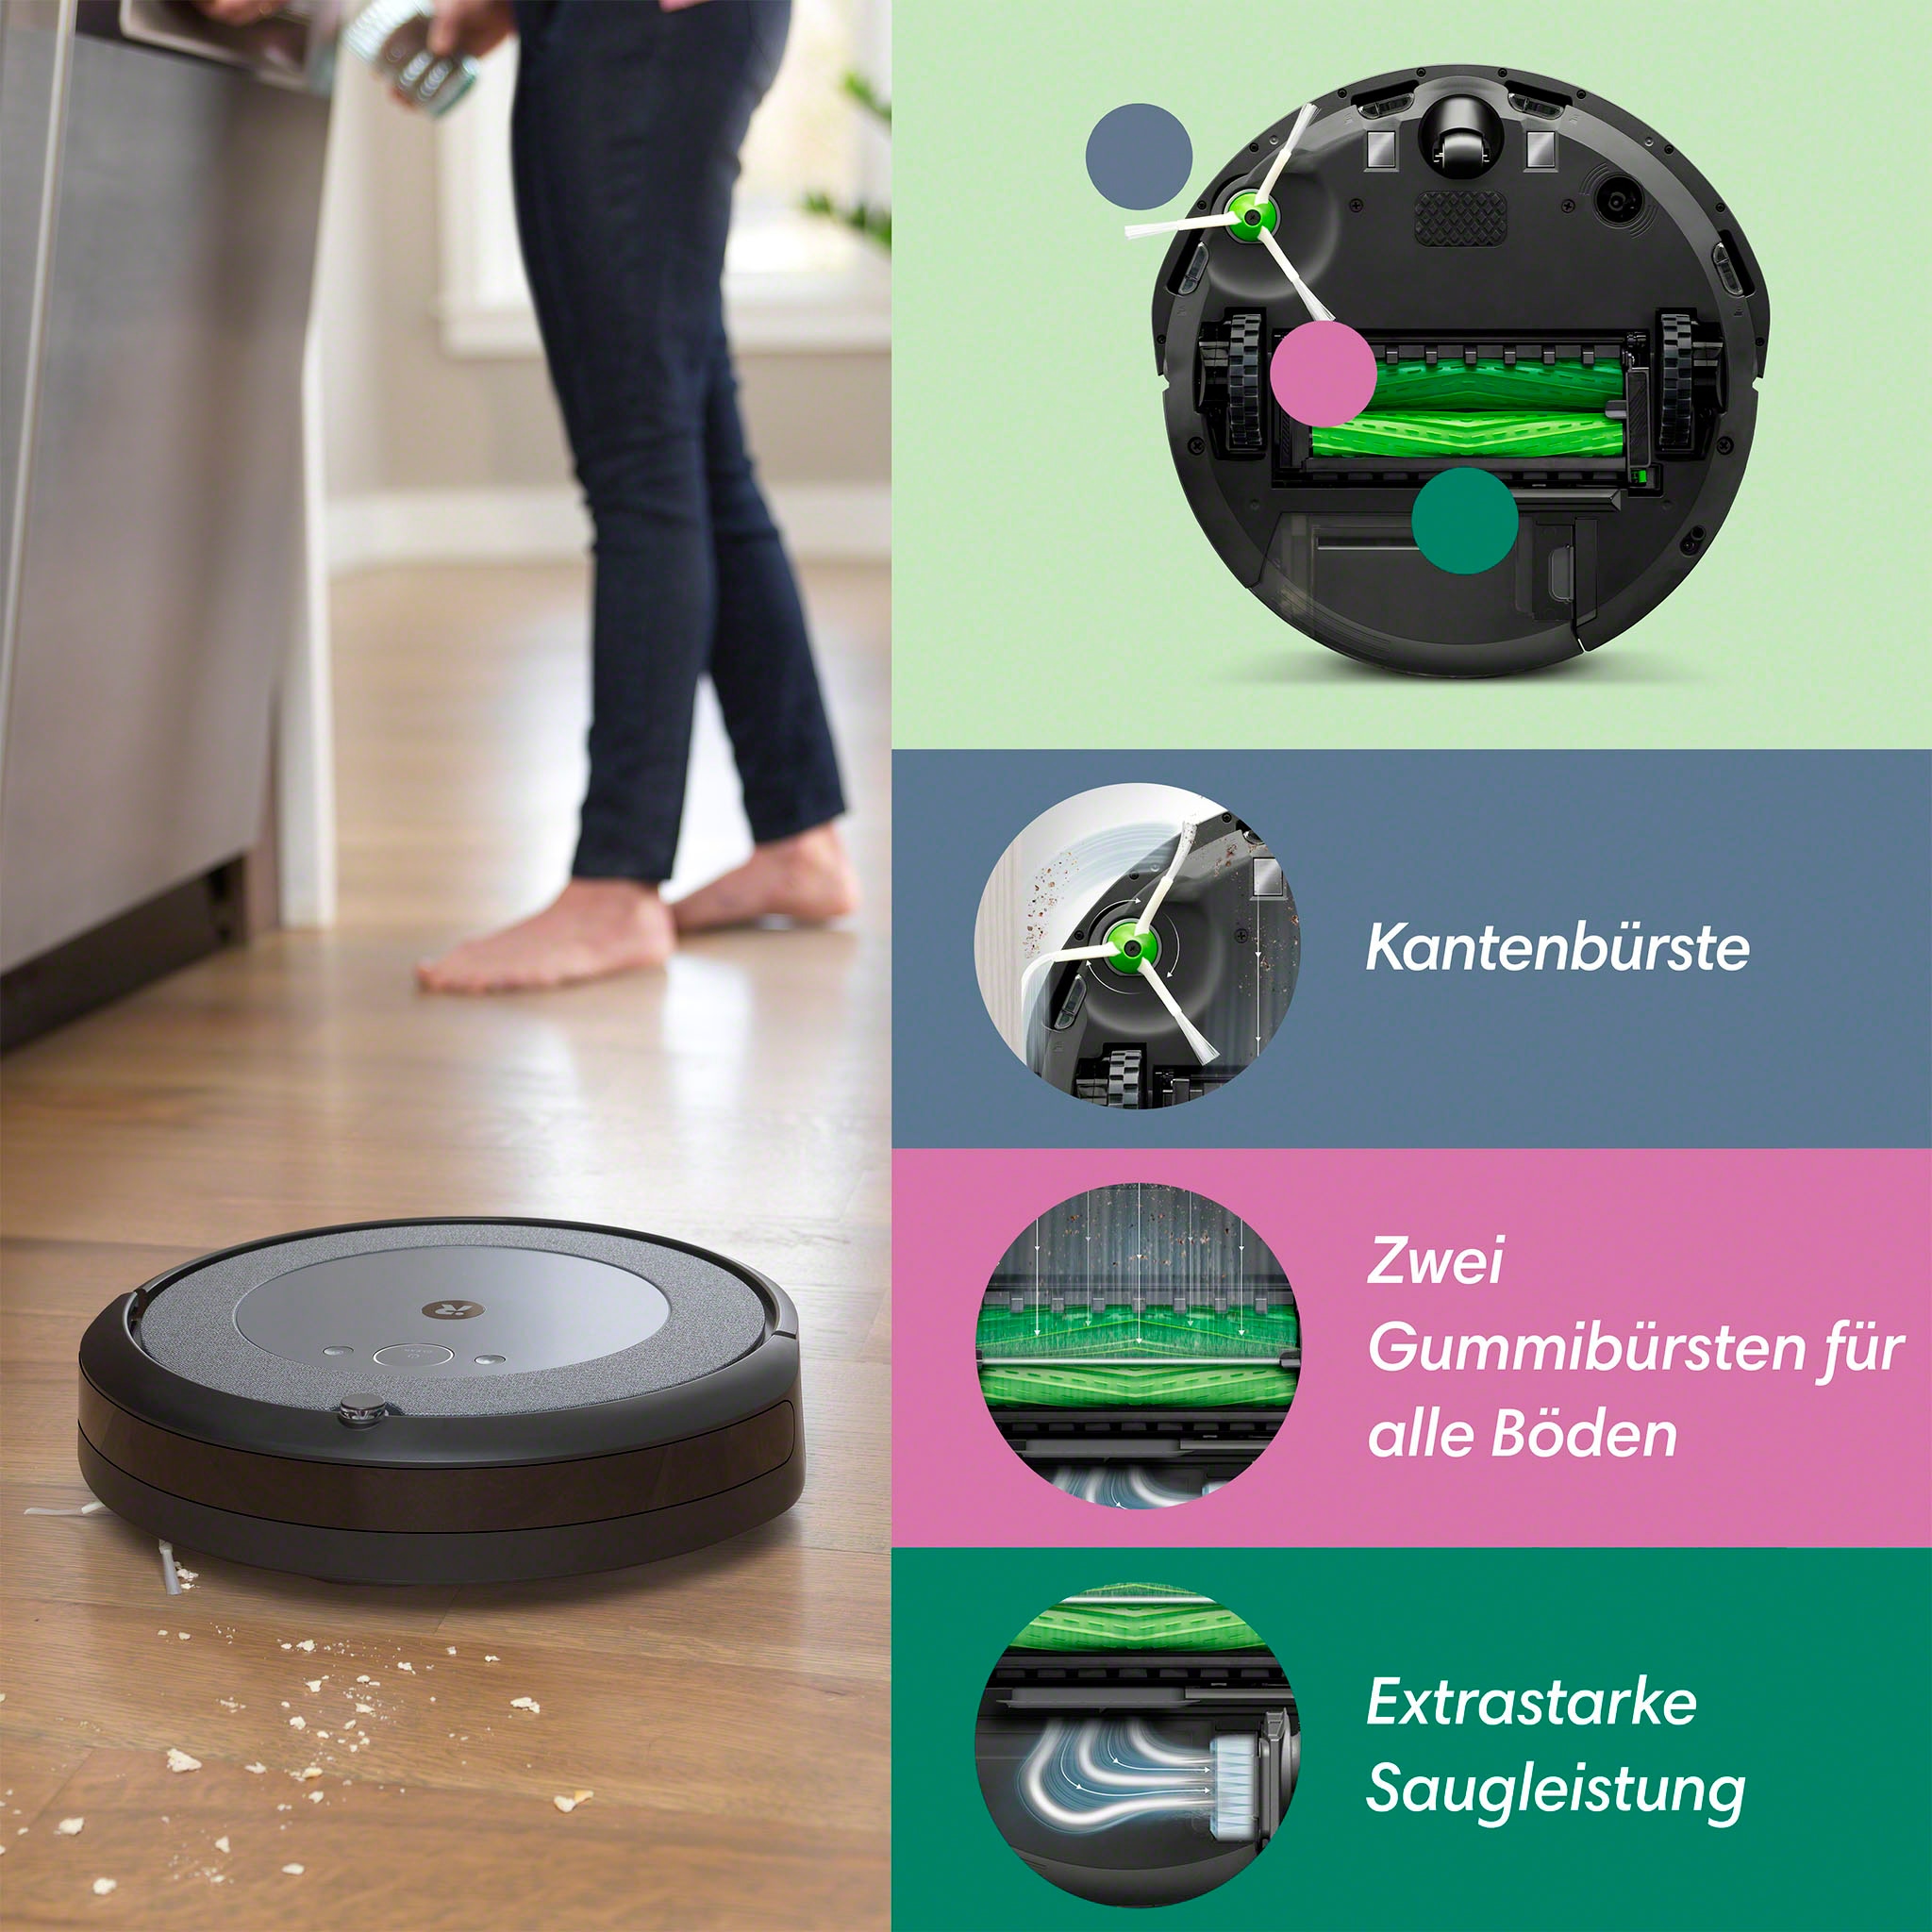 [Weiterhin beliebt] iRobot Saugroboter »Roomba OTTO (i5154)«, jetzt kaufen App-/Sprachsteuerung bei Einzelraumkartierung, i5